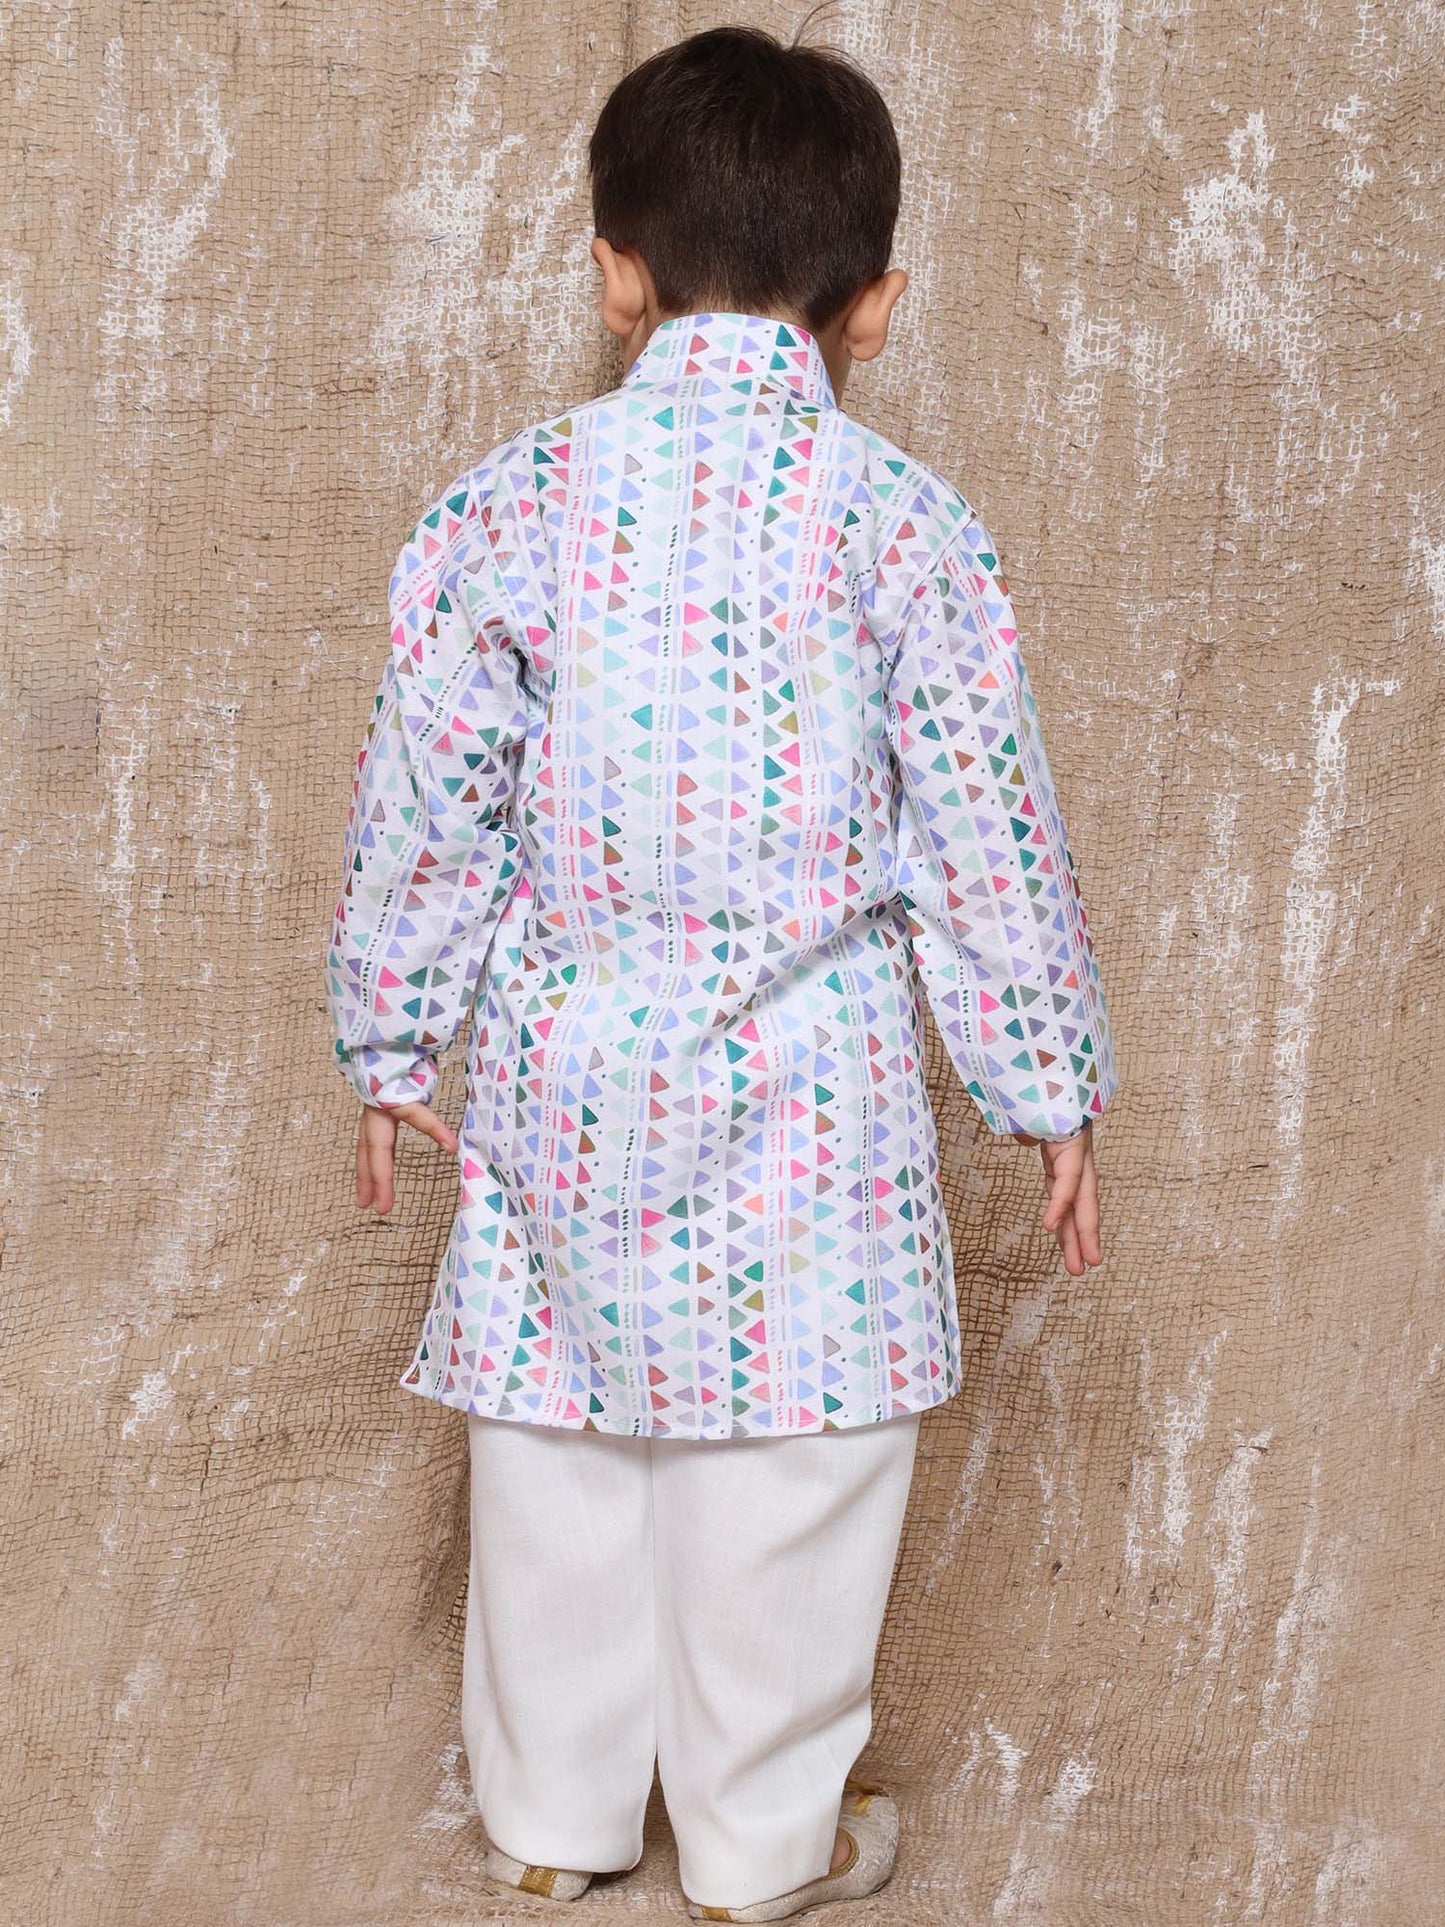 Boys Blue Cotton Printed Kurta Pyjama Set